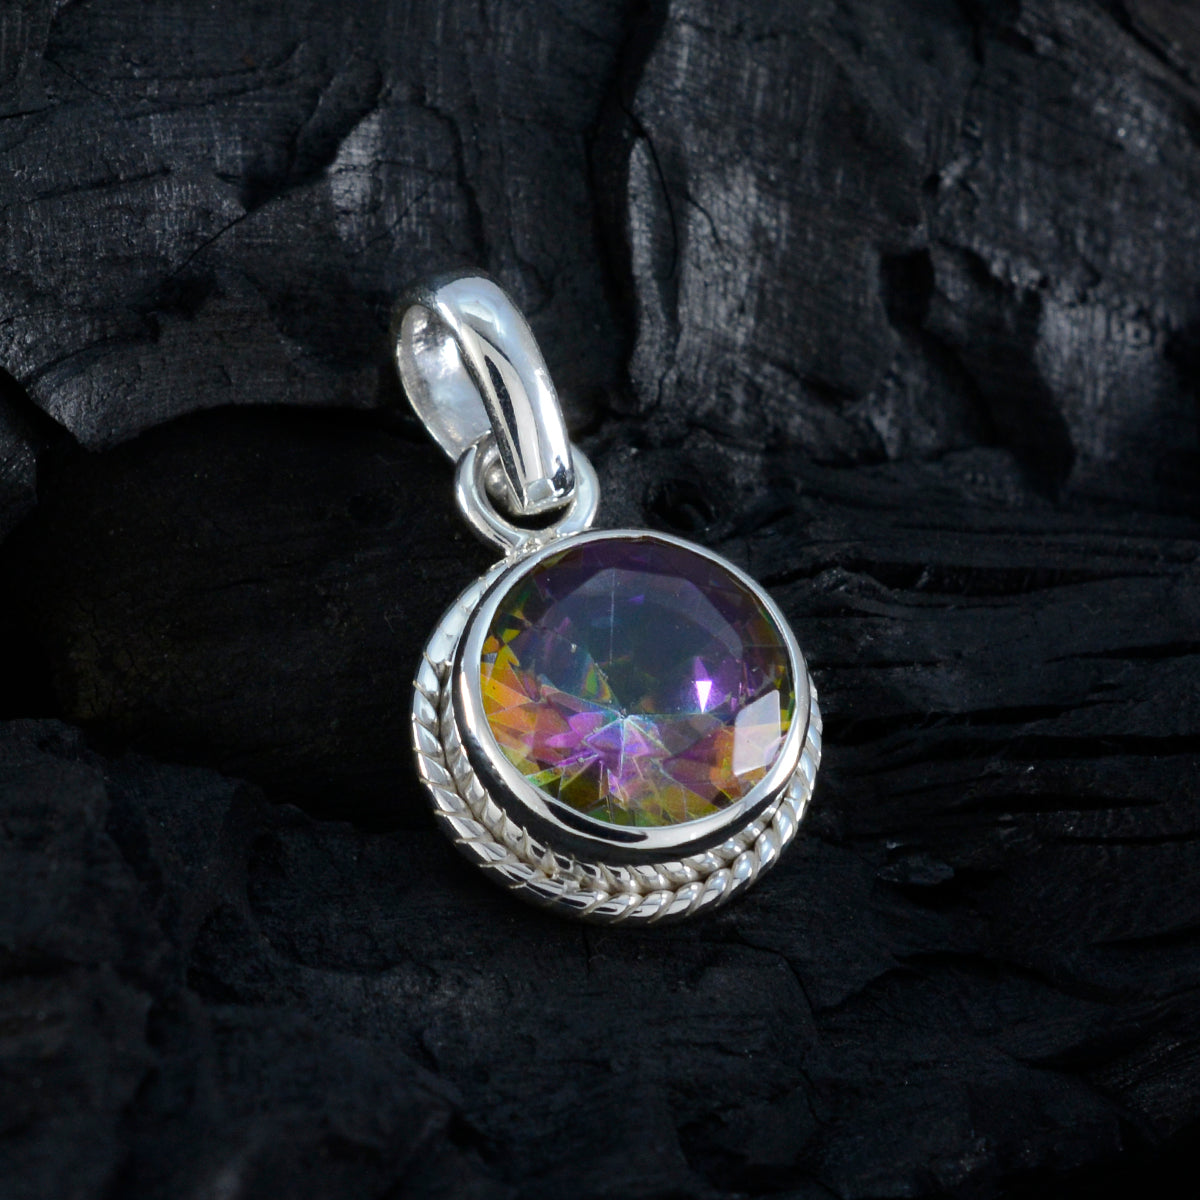 Riyo attrayant pierre précieuse ronde à facettes multicolore quartz mystique pendentif en argent sterling cadeau pour les femmes